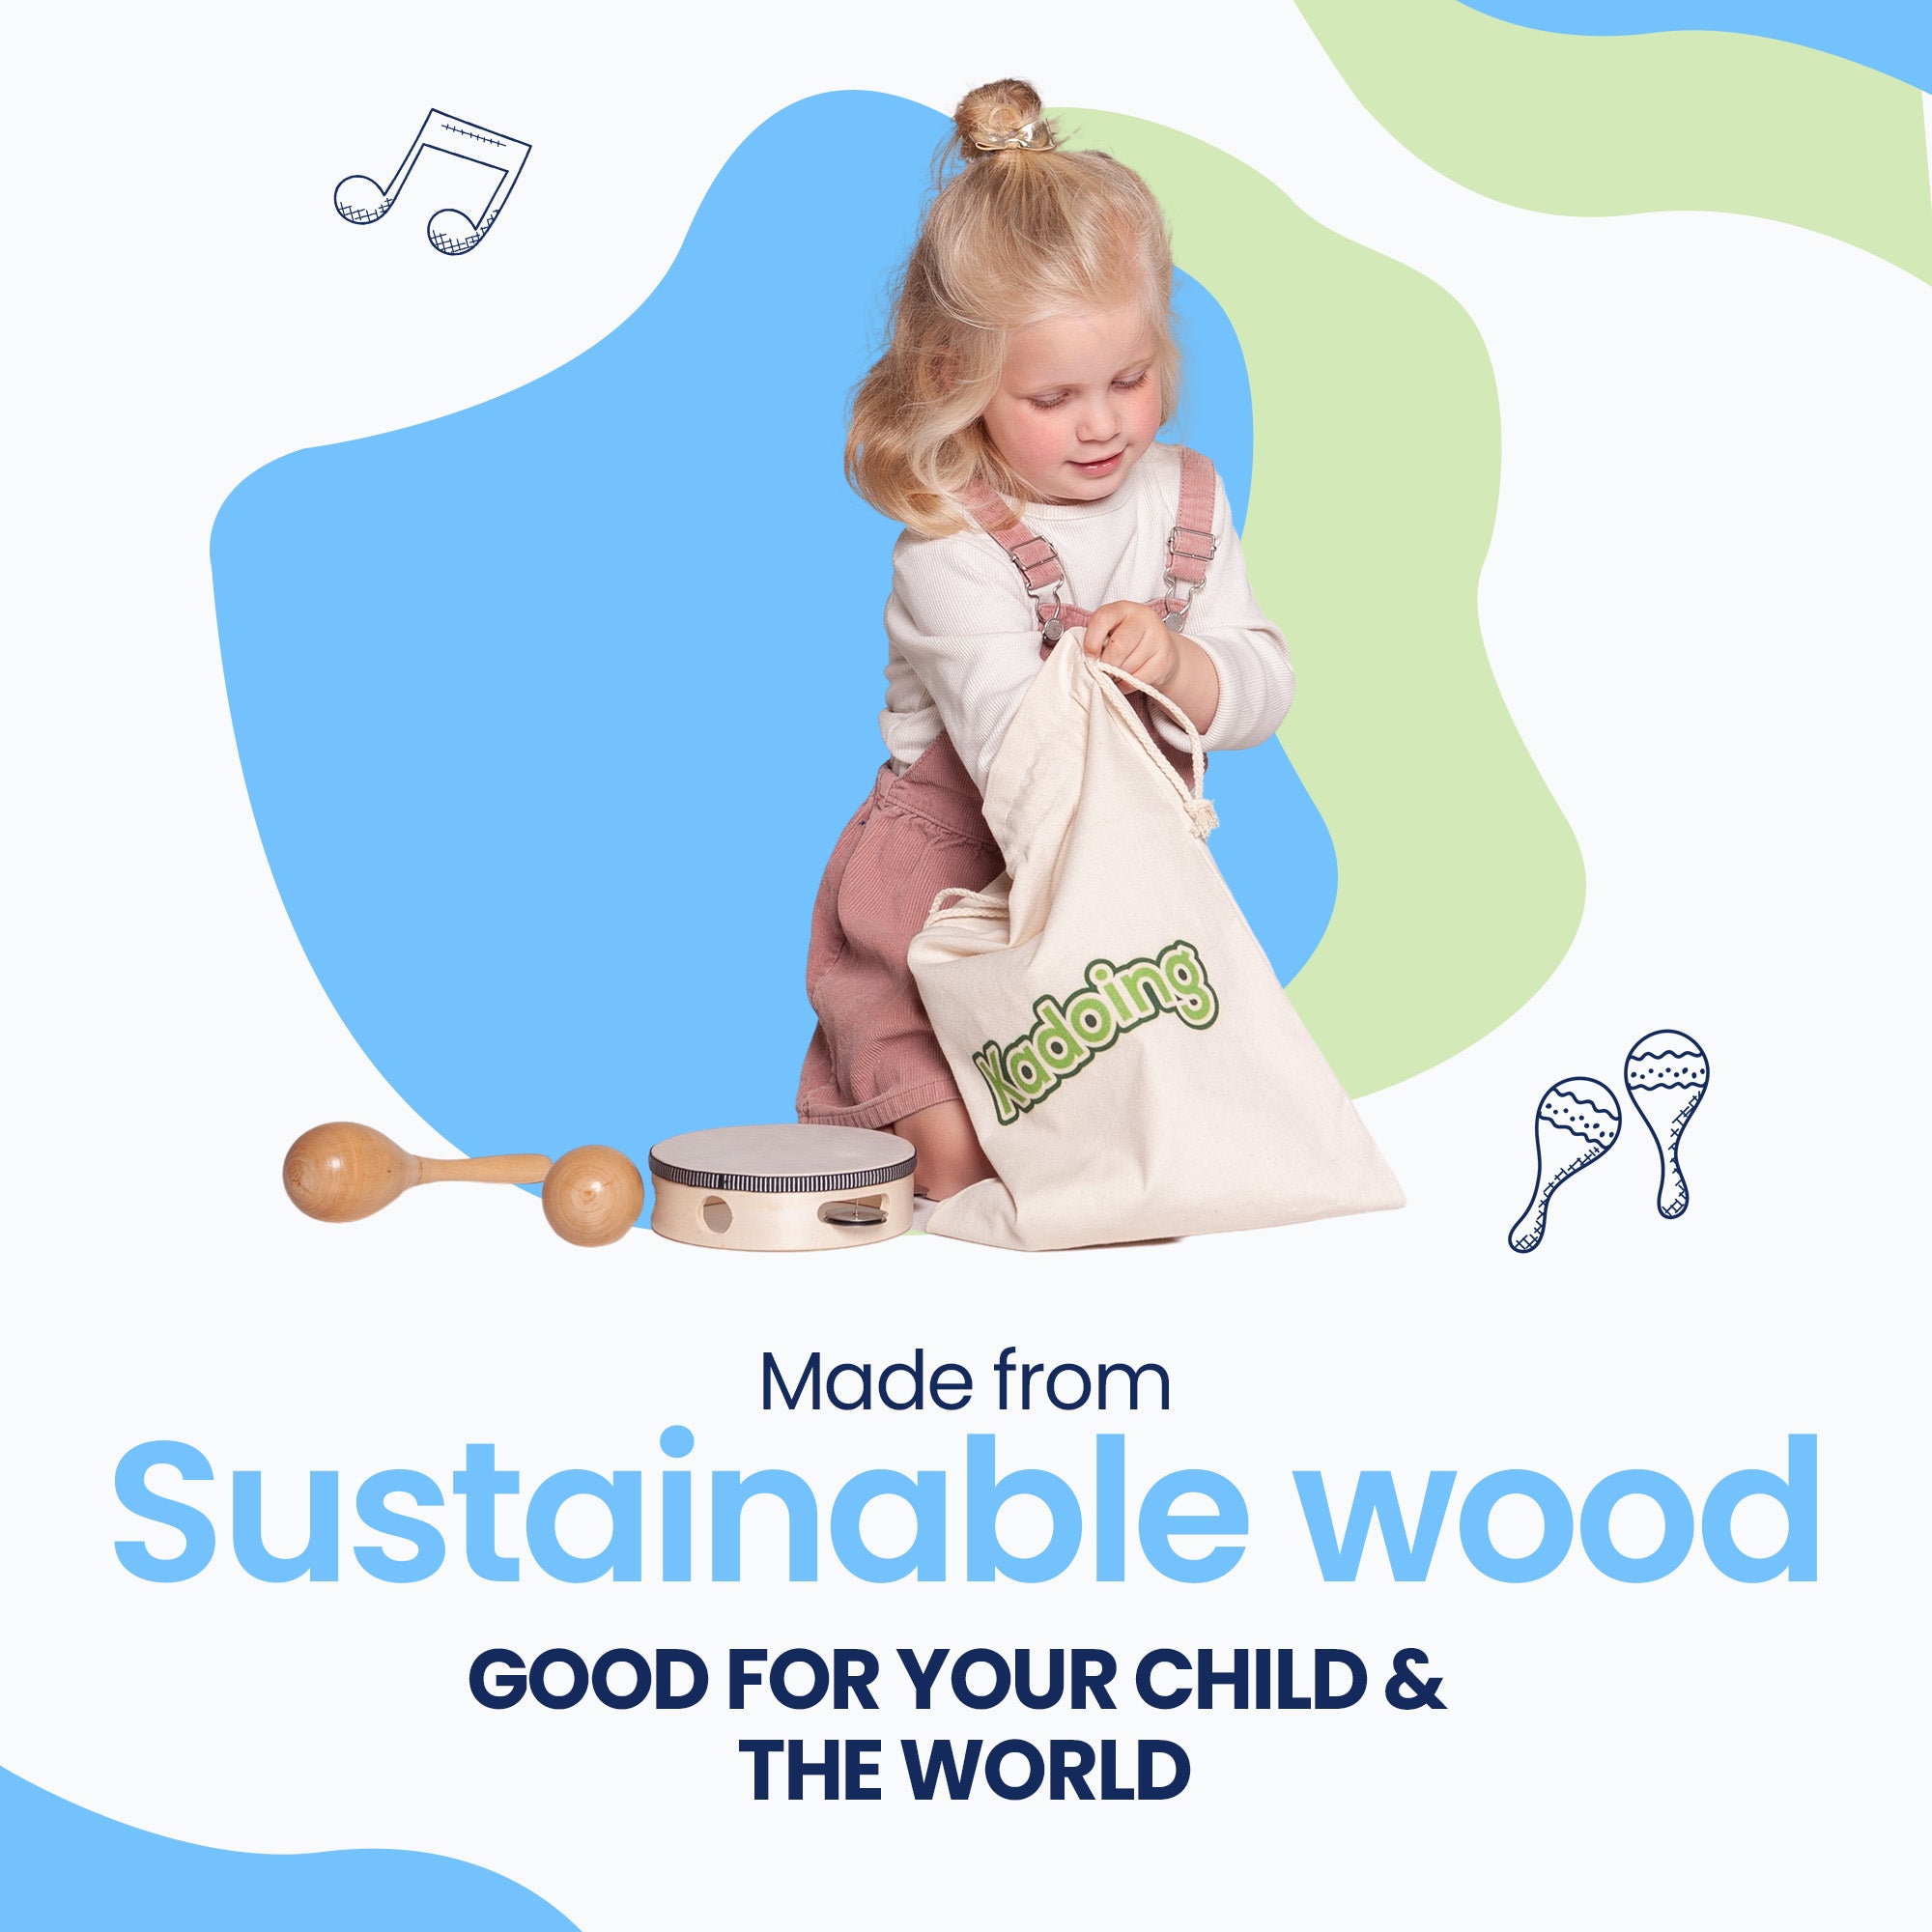 Il set di strumenti musicali è realizzato in legno sostenibile, come ci si aspetterebbe da Kadoing